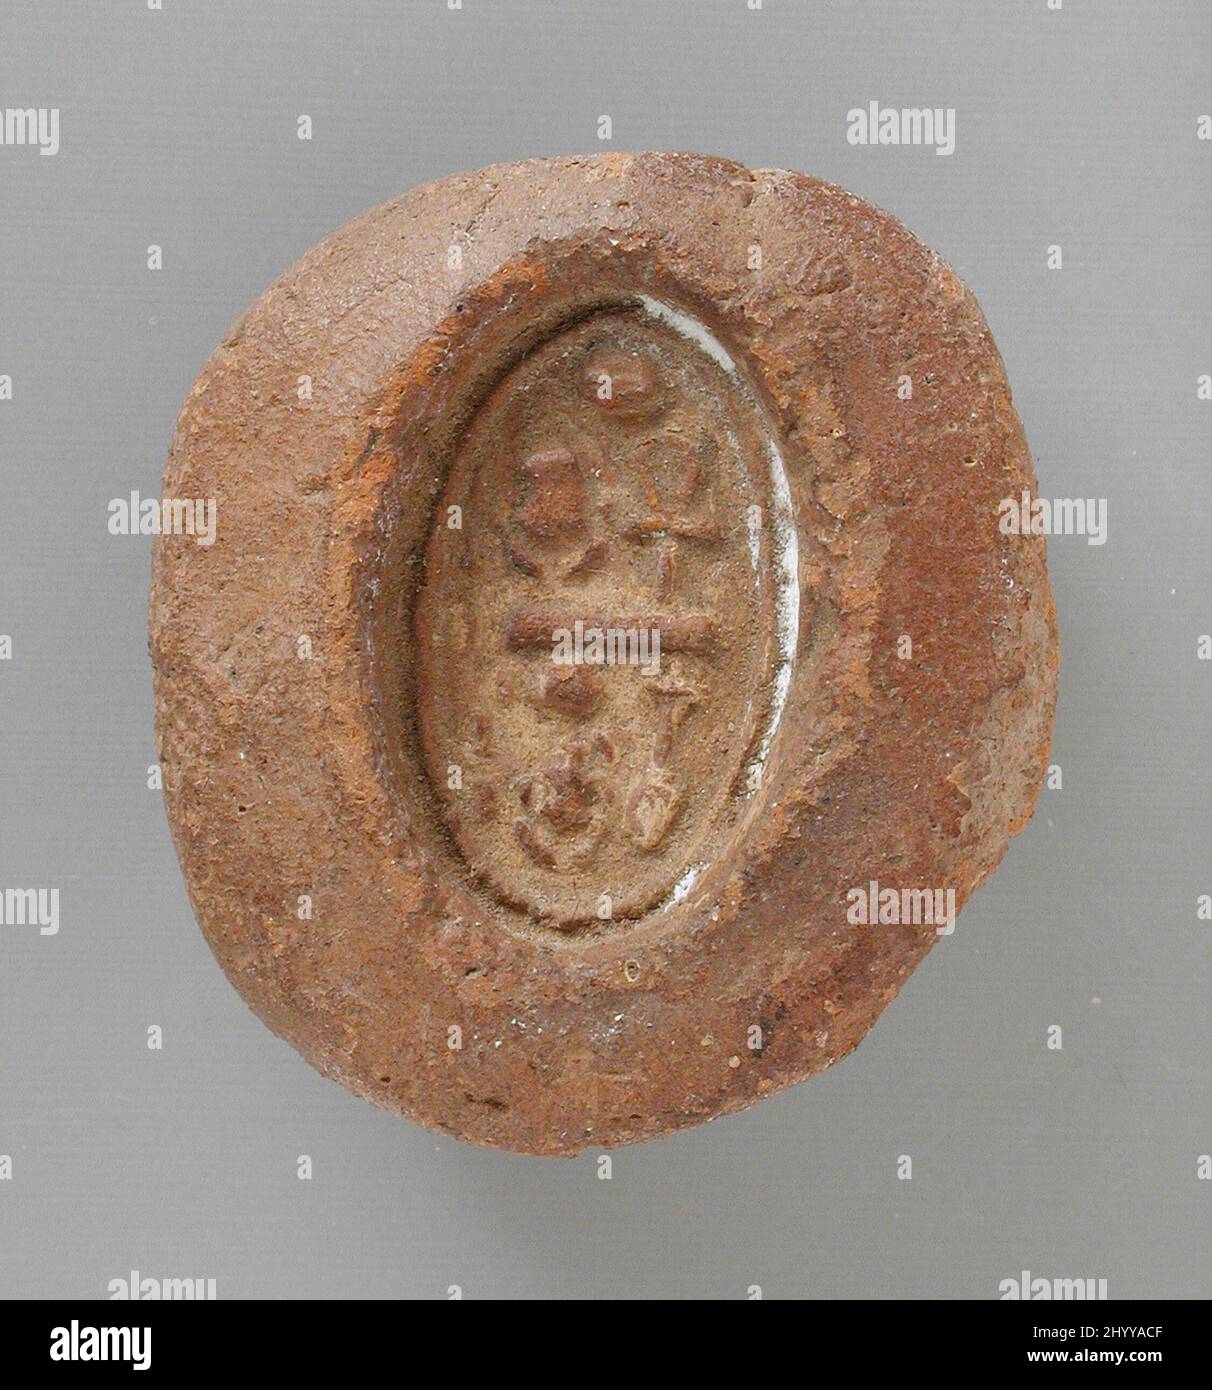 Moule avec le nom du trône du roi Smenkare. Égypte, Nouveau Royaume, dynastie 18th, règne de Smenkare (1355 BCE). Outils et équipement; moules. Terre cuite Banque D'Images